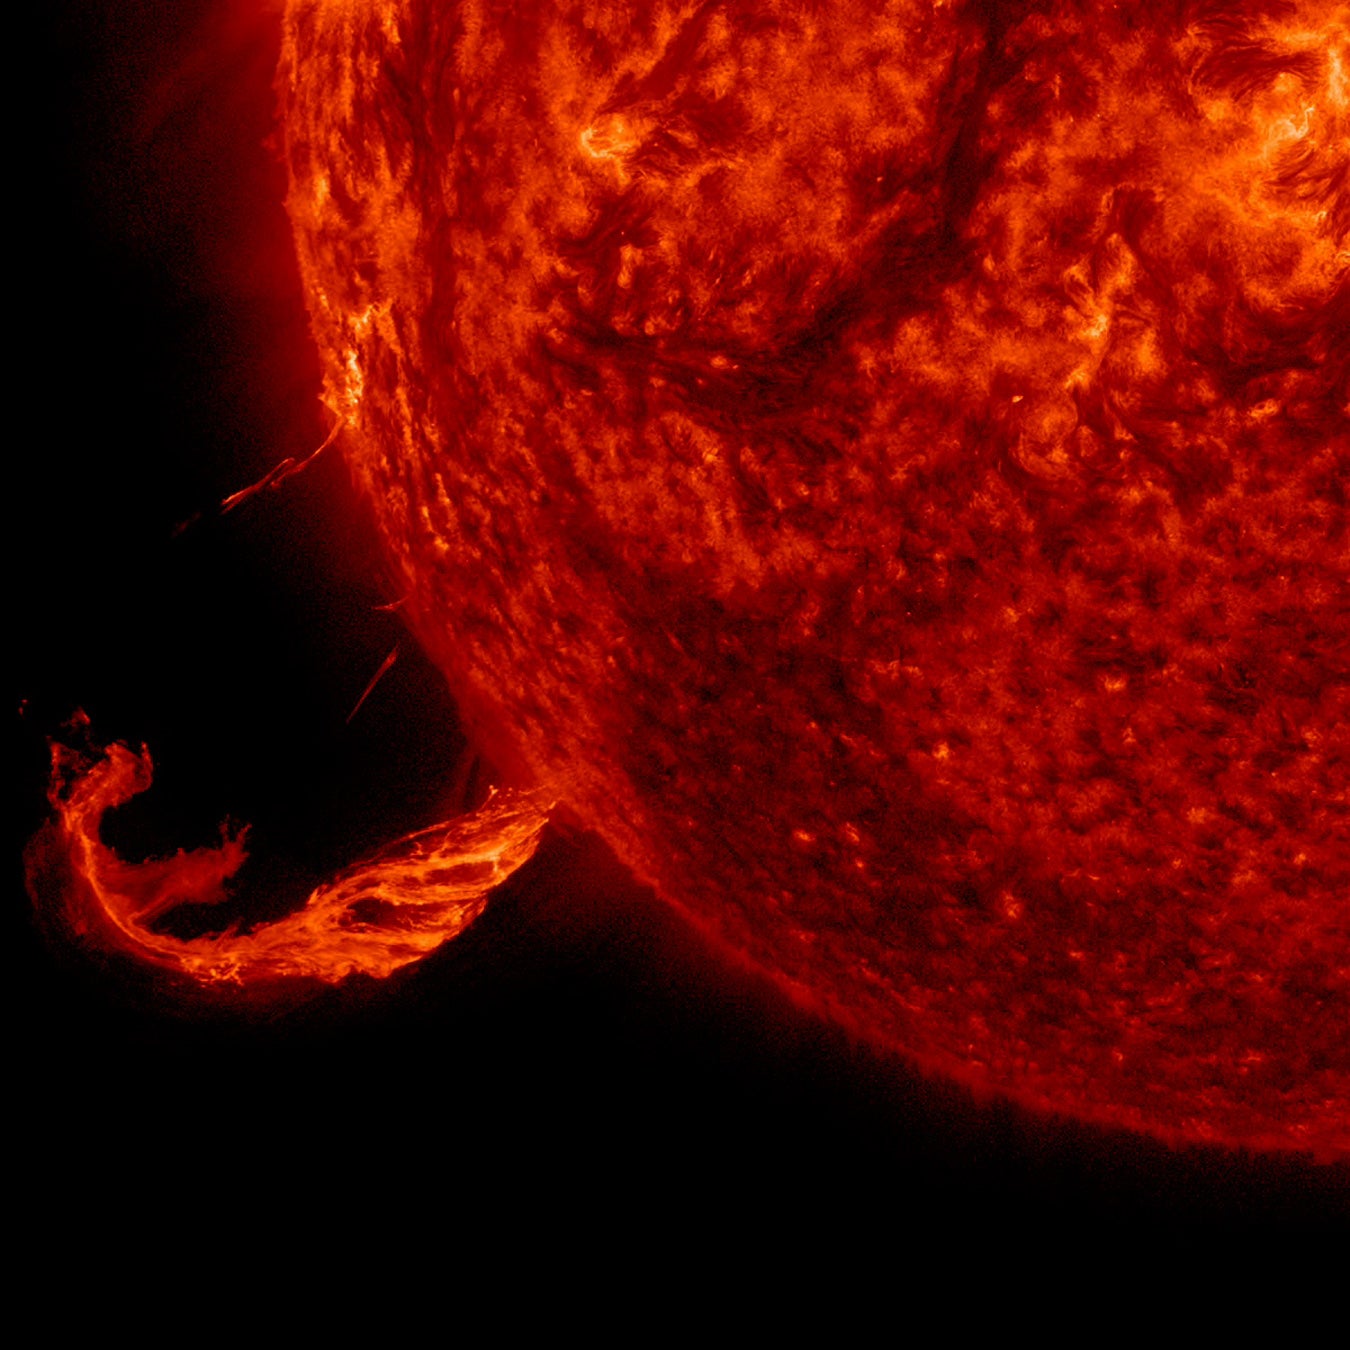 En 2015, el sol expulsó una CME junto con parte de un filamento solar en un periodo de tres horas